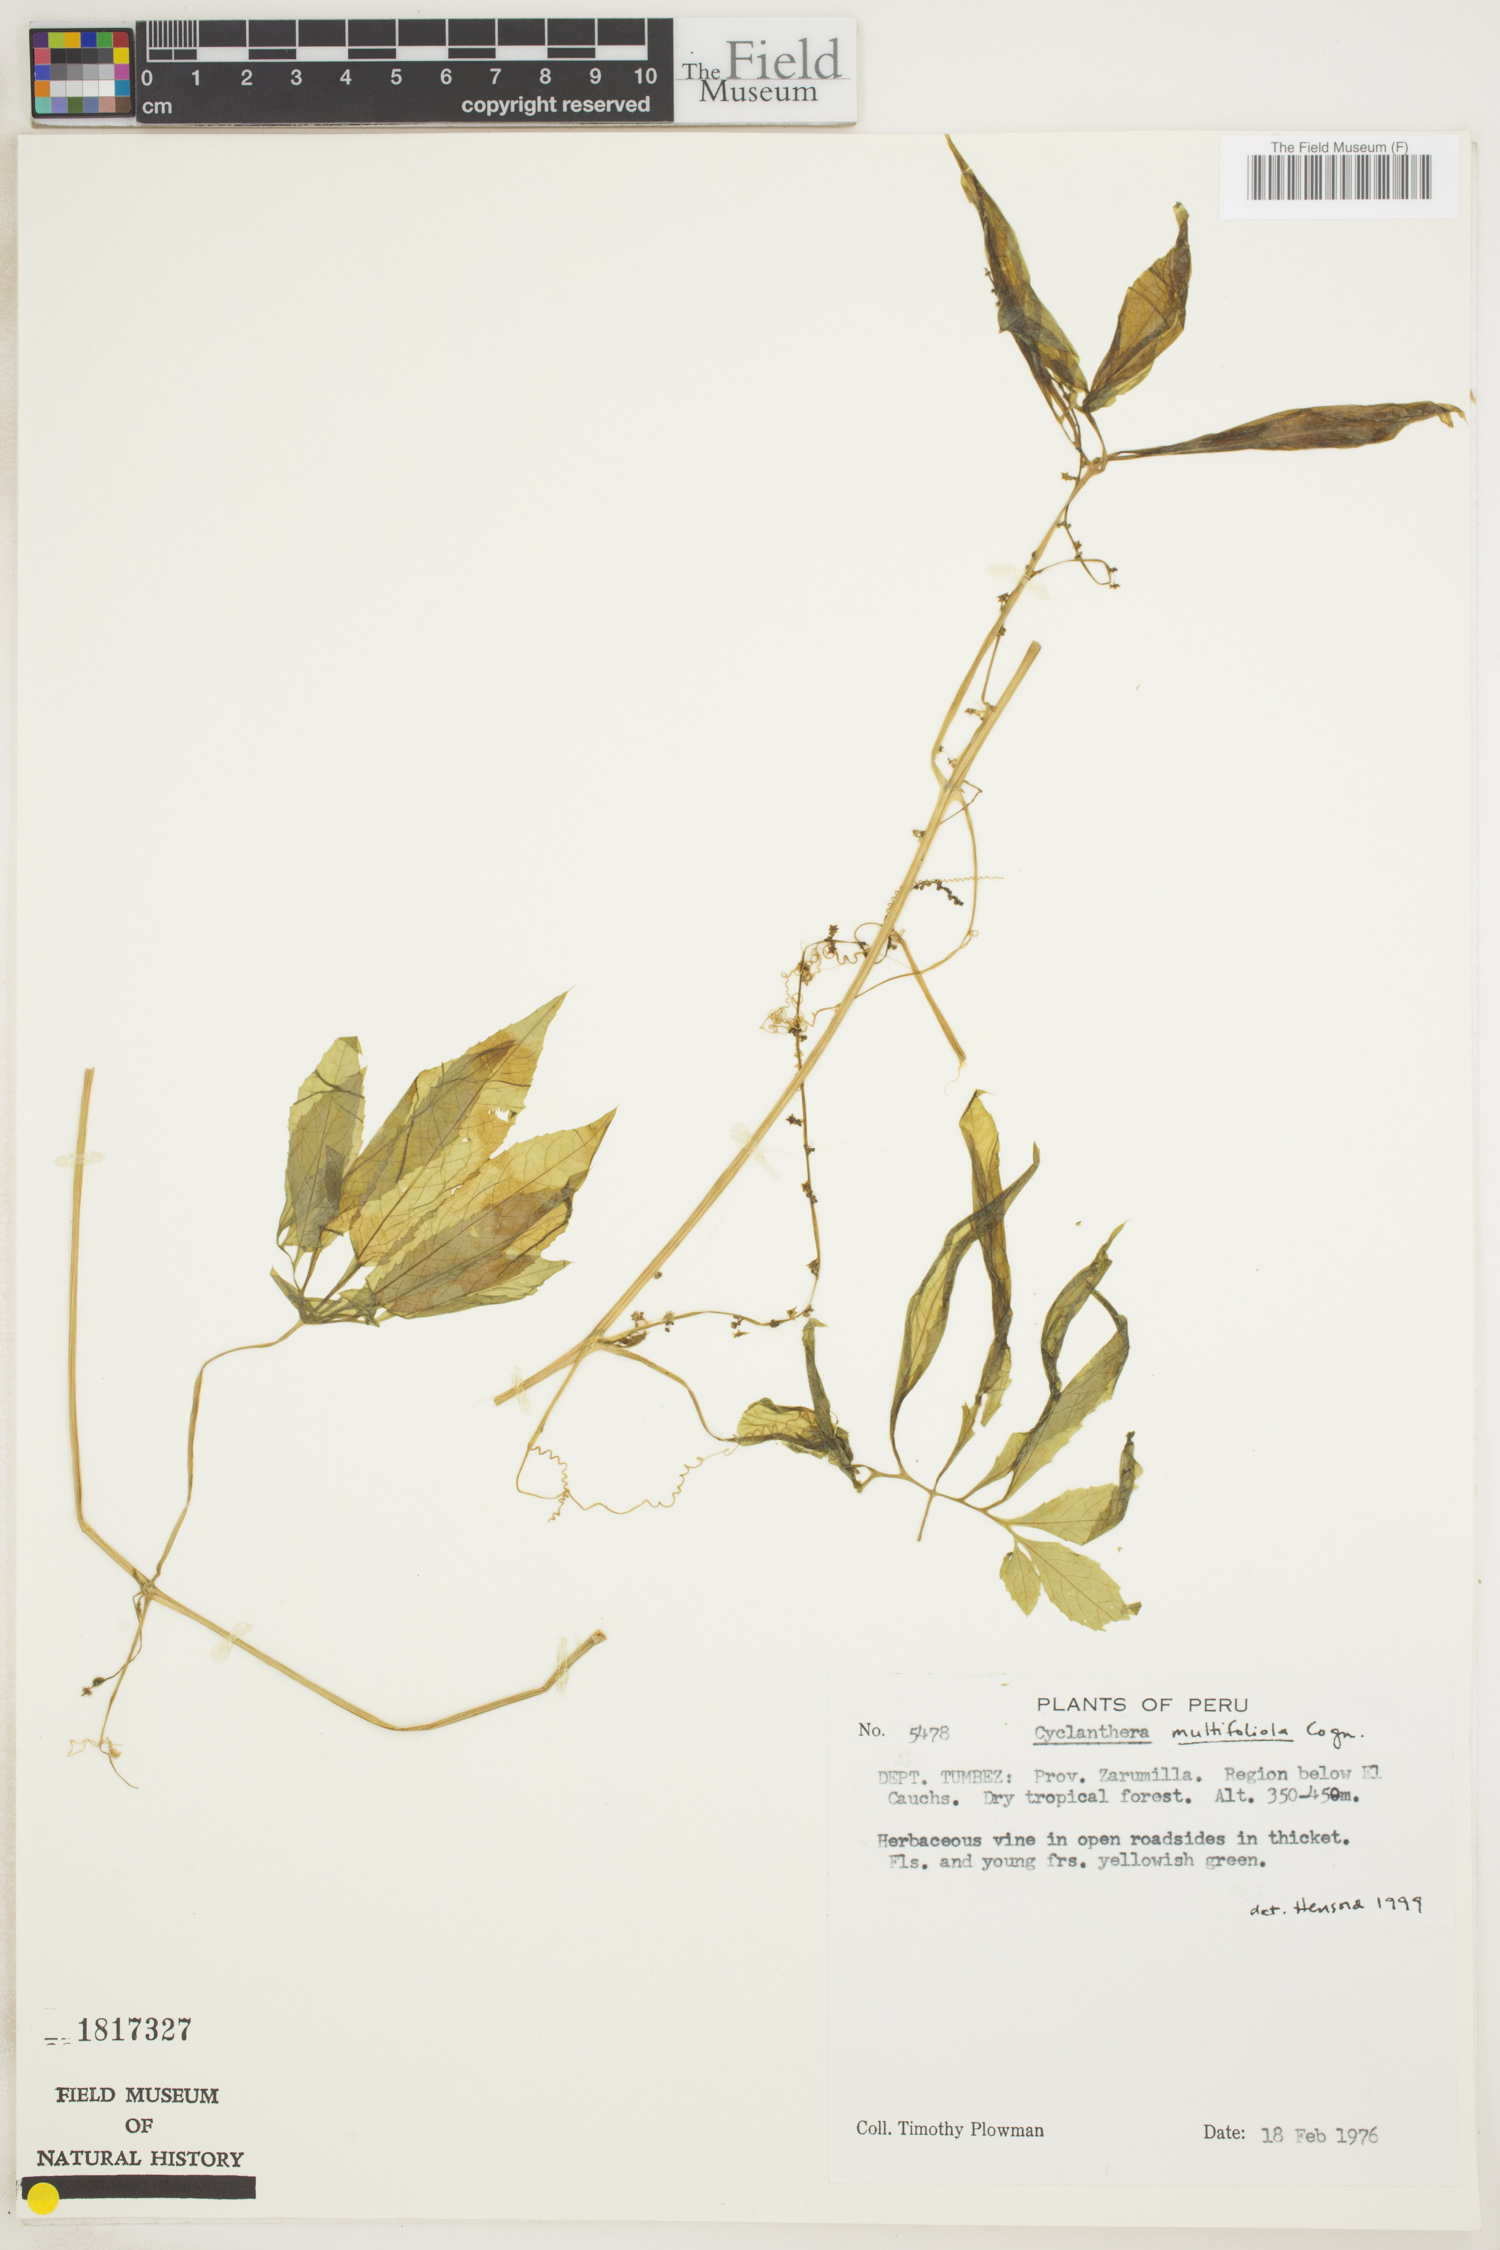 Cyclanthera multifoliola image